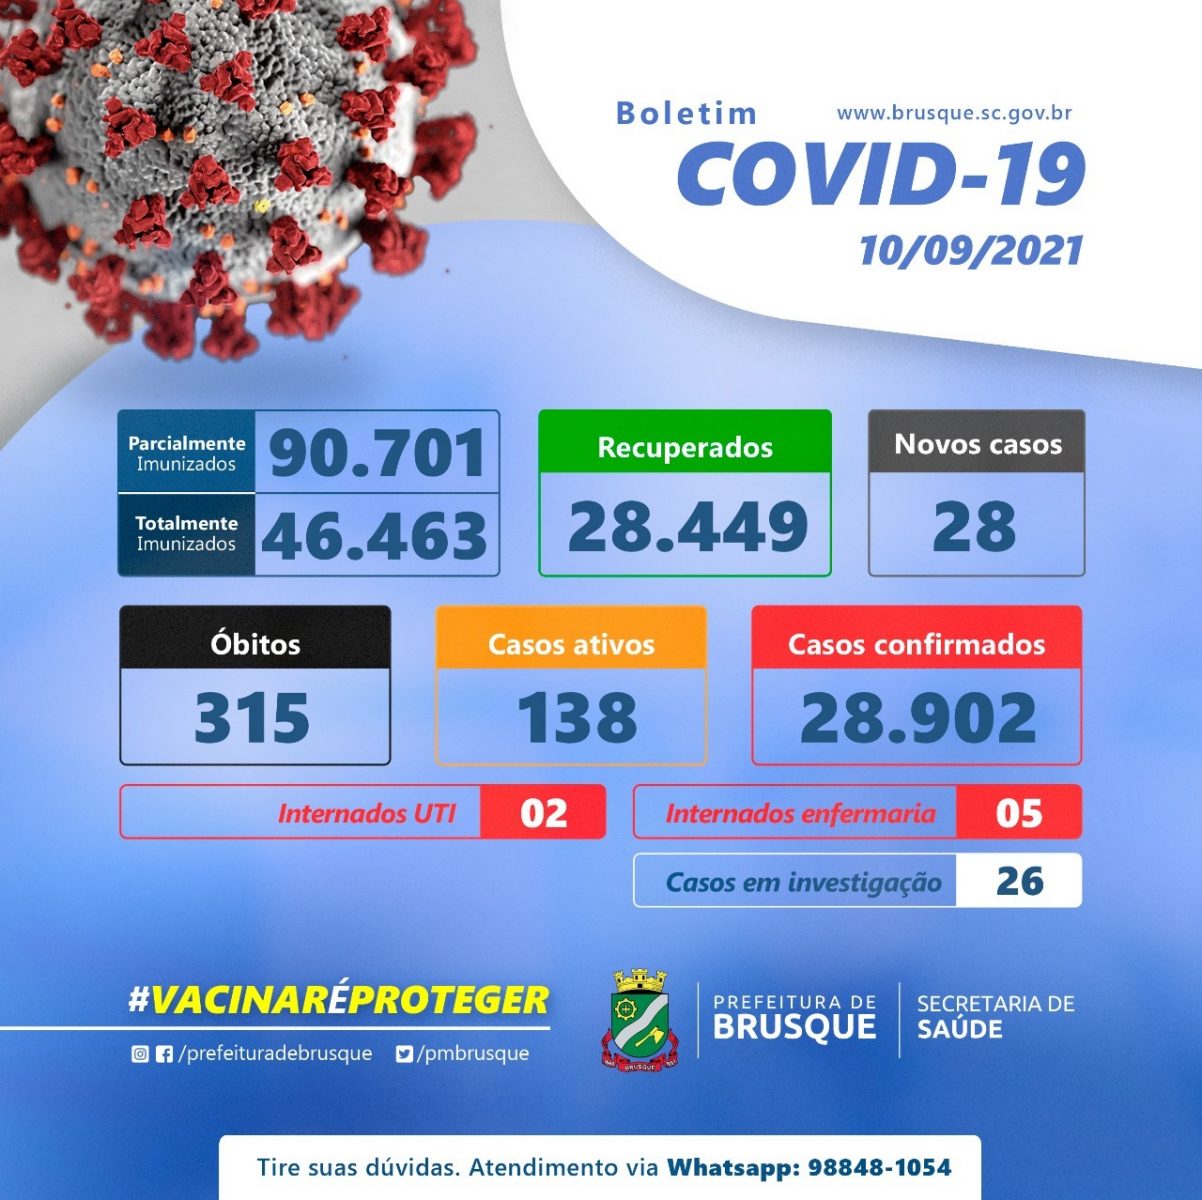 Covid-19: Brusque possui 138 casos ativos de Coronavírus